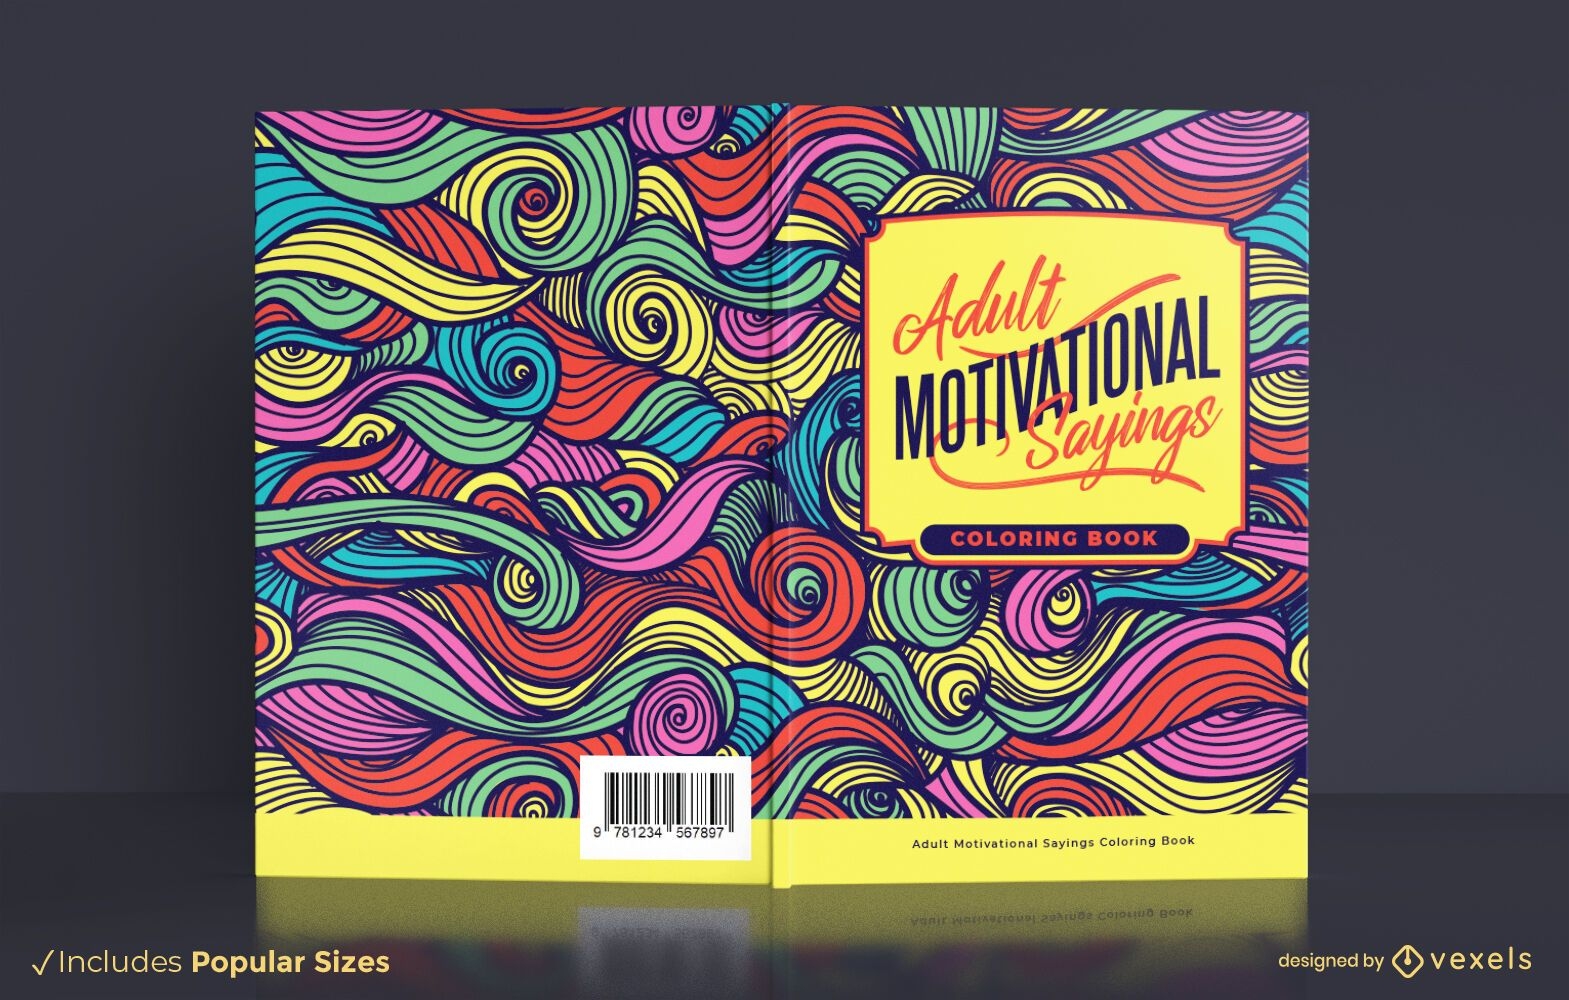 Diseño de portada de libro de refranes motivacionales